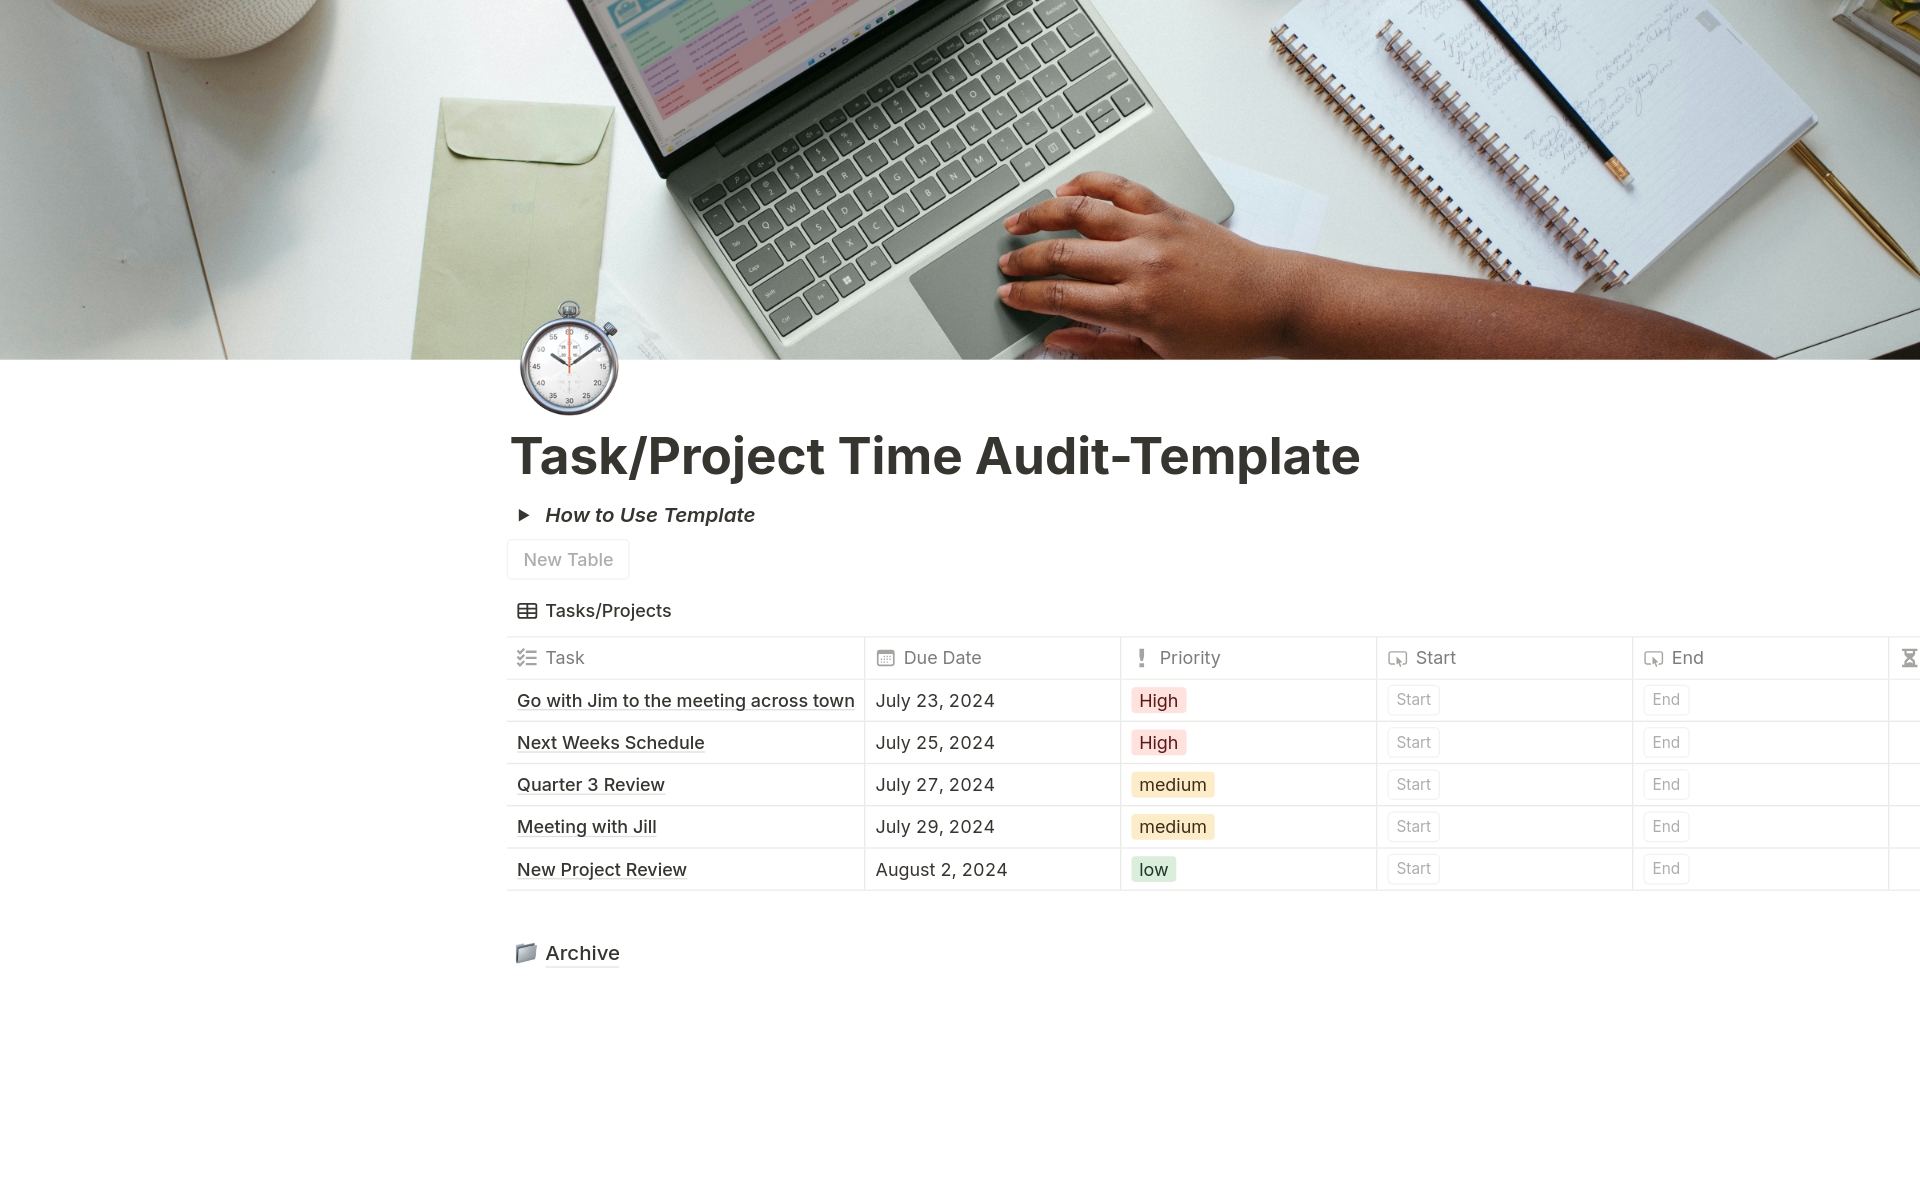 Aperçu du modèle de Task/Project Time Audit